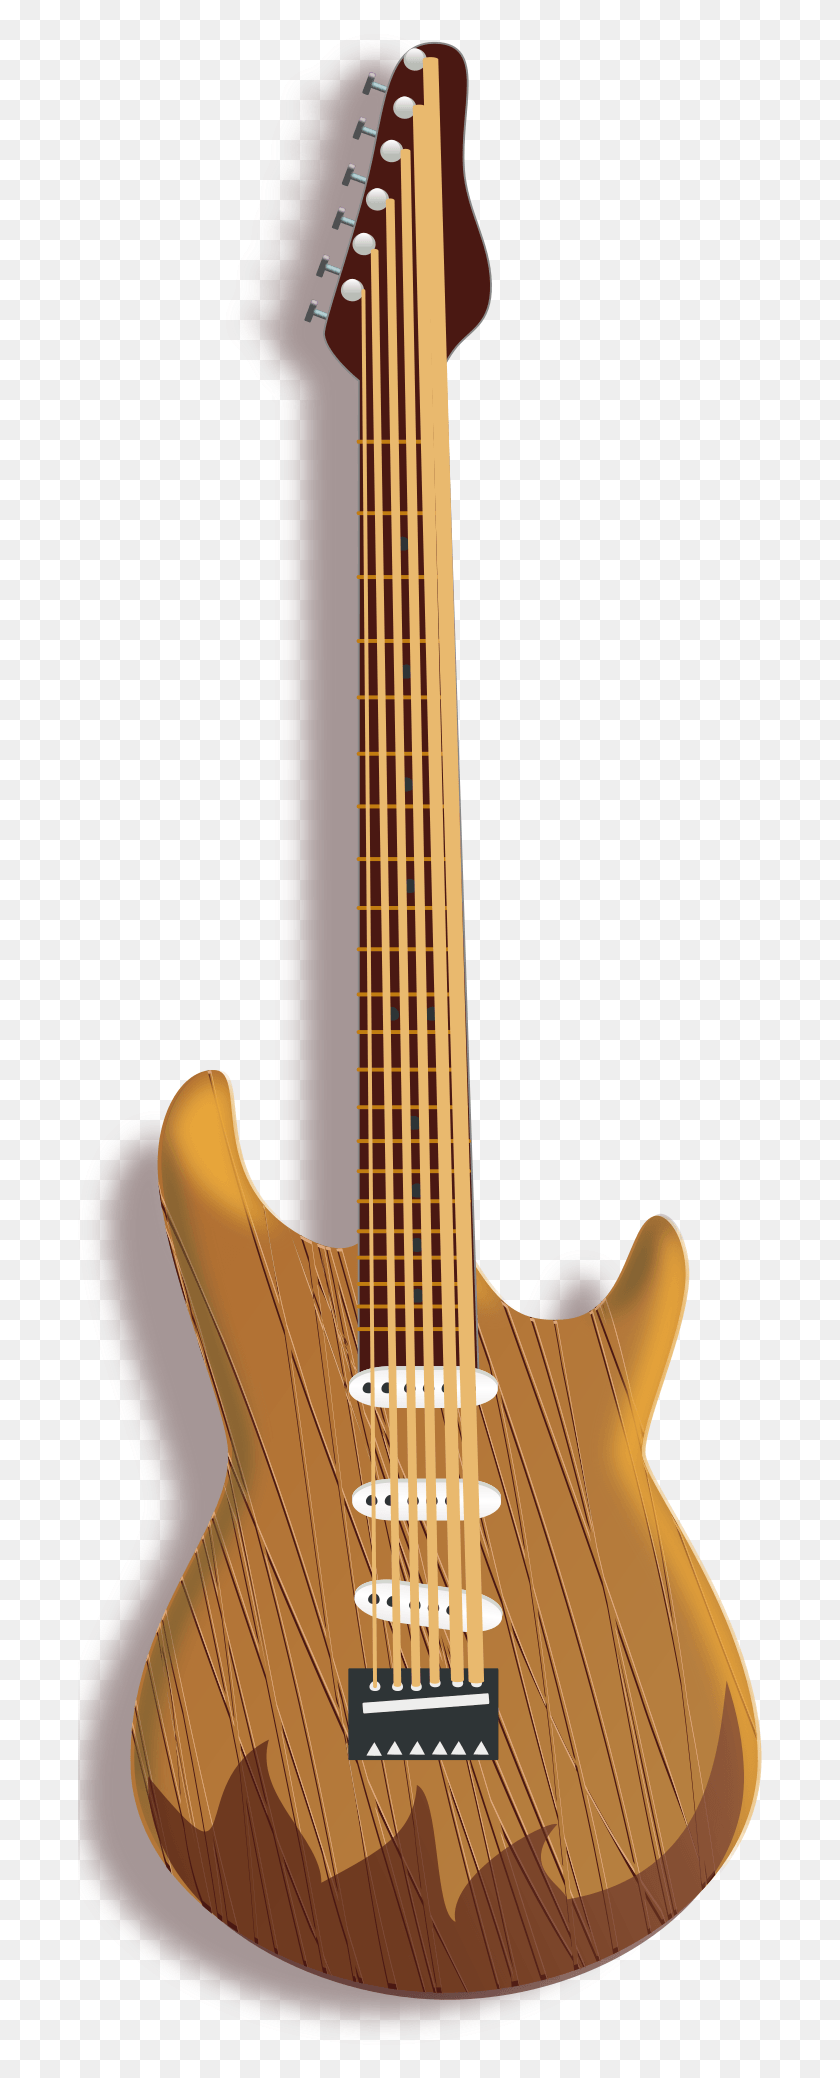 685x2018 This Free Icons Design Of Wood Guitarra Madeira, Actividades De Ocio, Bajo, Instrumento Musical Hd Png Descargar